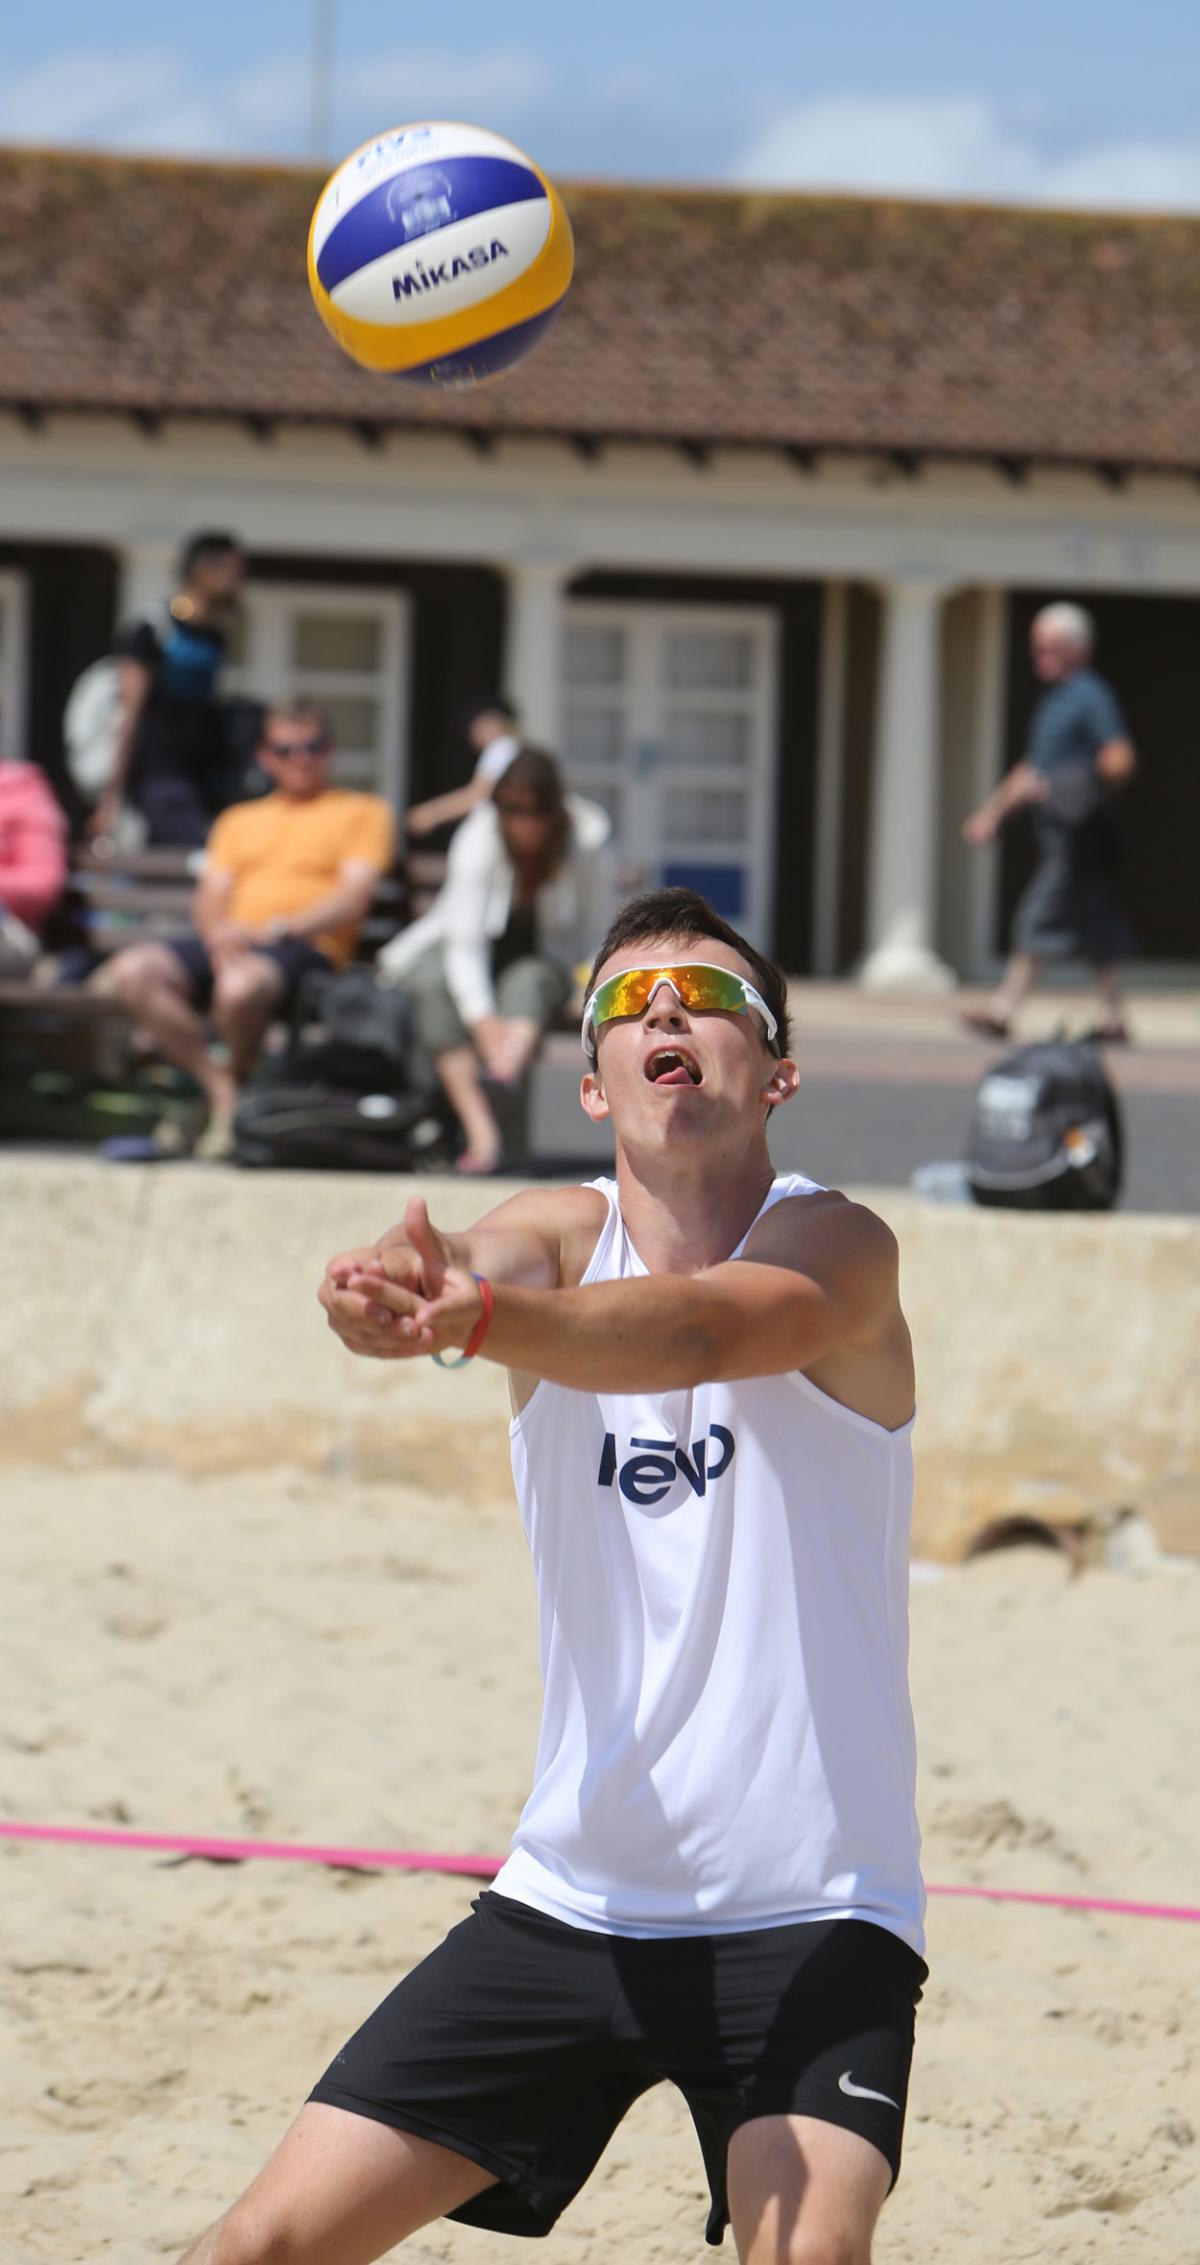 Junior Beach Volleyball Festival 2015 at Sandbanks 